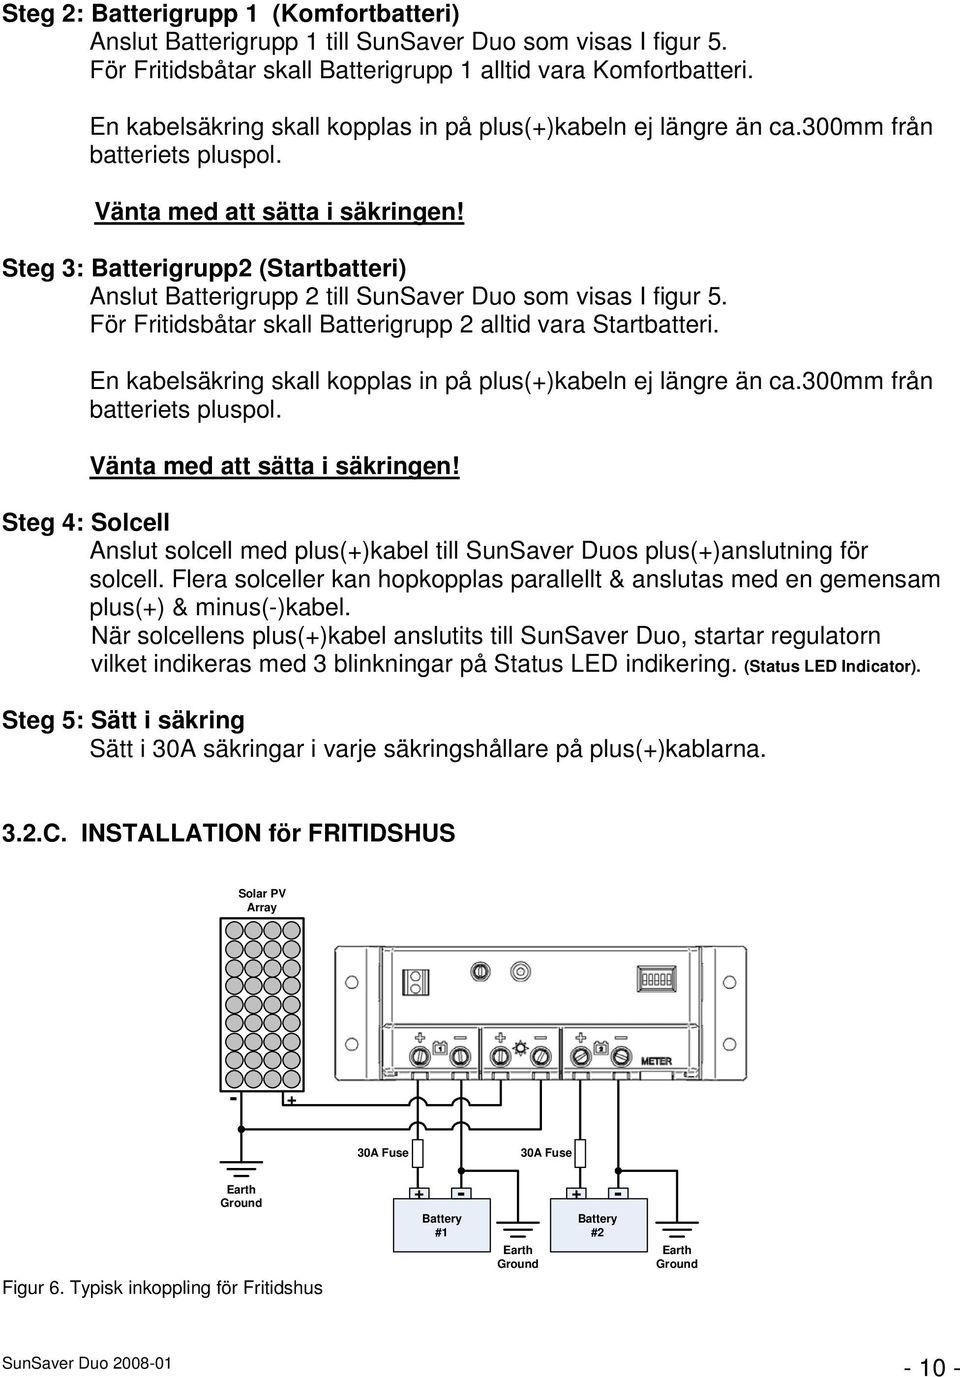 Steg 3: Batterigrupp2 (Startbatteri) Anslut Batterigrupp 2 till SunSaver Duo som visas I figur 5. För Fritidsbåtar skall Batterigrupp 2 alltid vara Startbatteri.